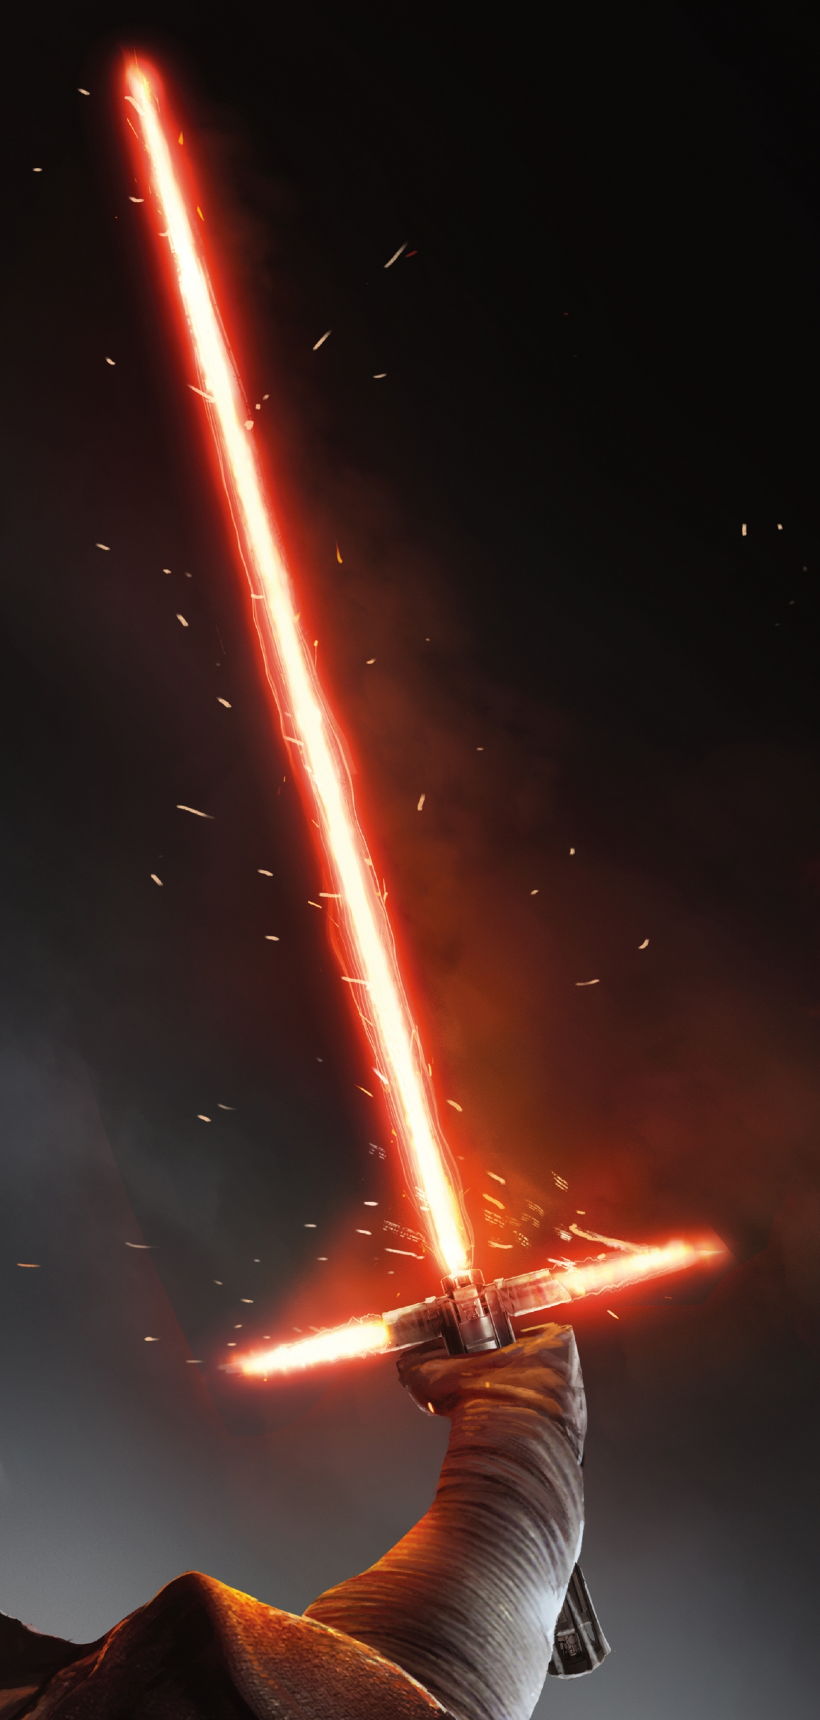 Kylo Ren's lightsaber. Star wars geek, Star wars art, Star wars